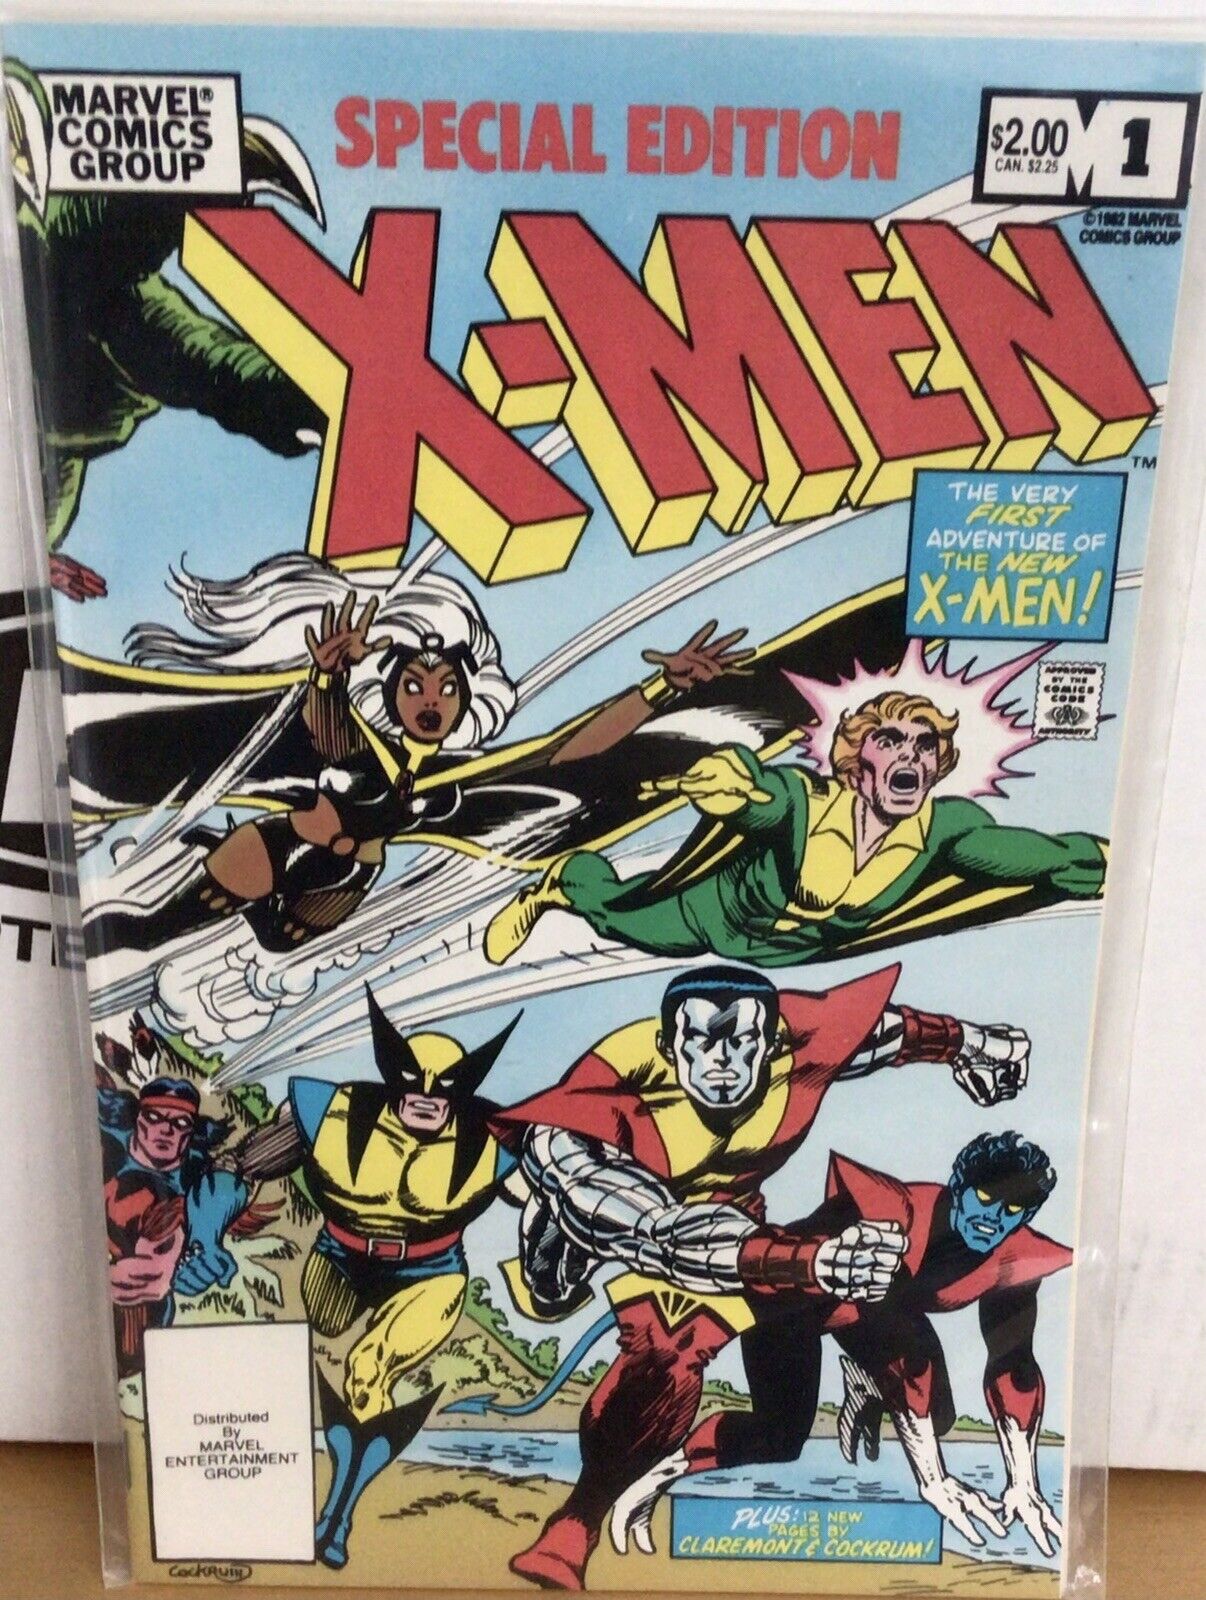 Marvel Comics Special Edition X-Men 1